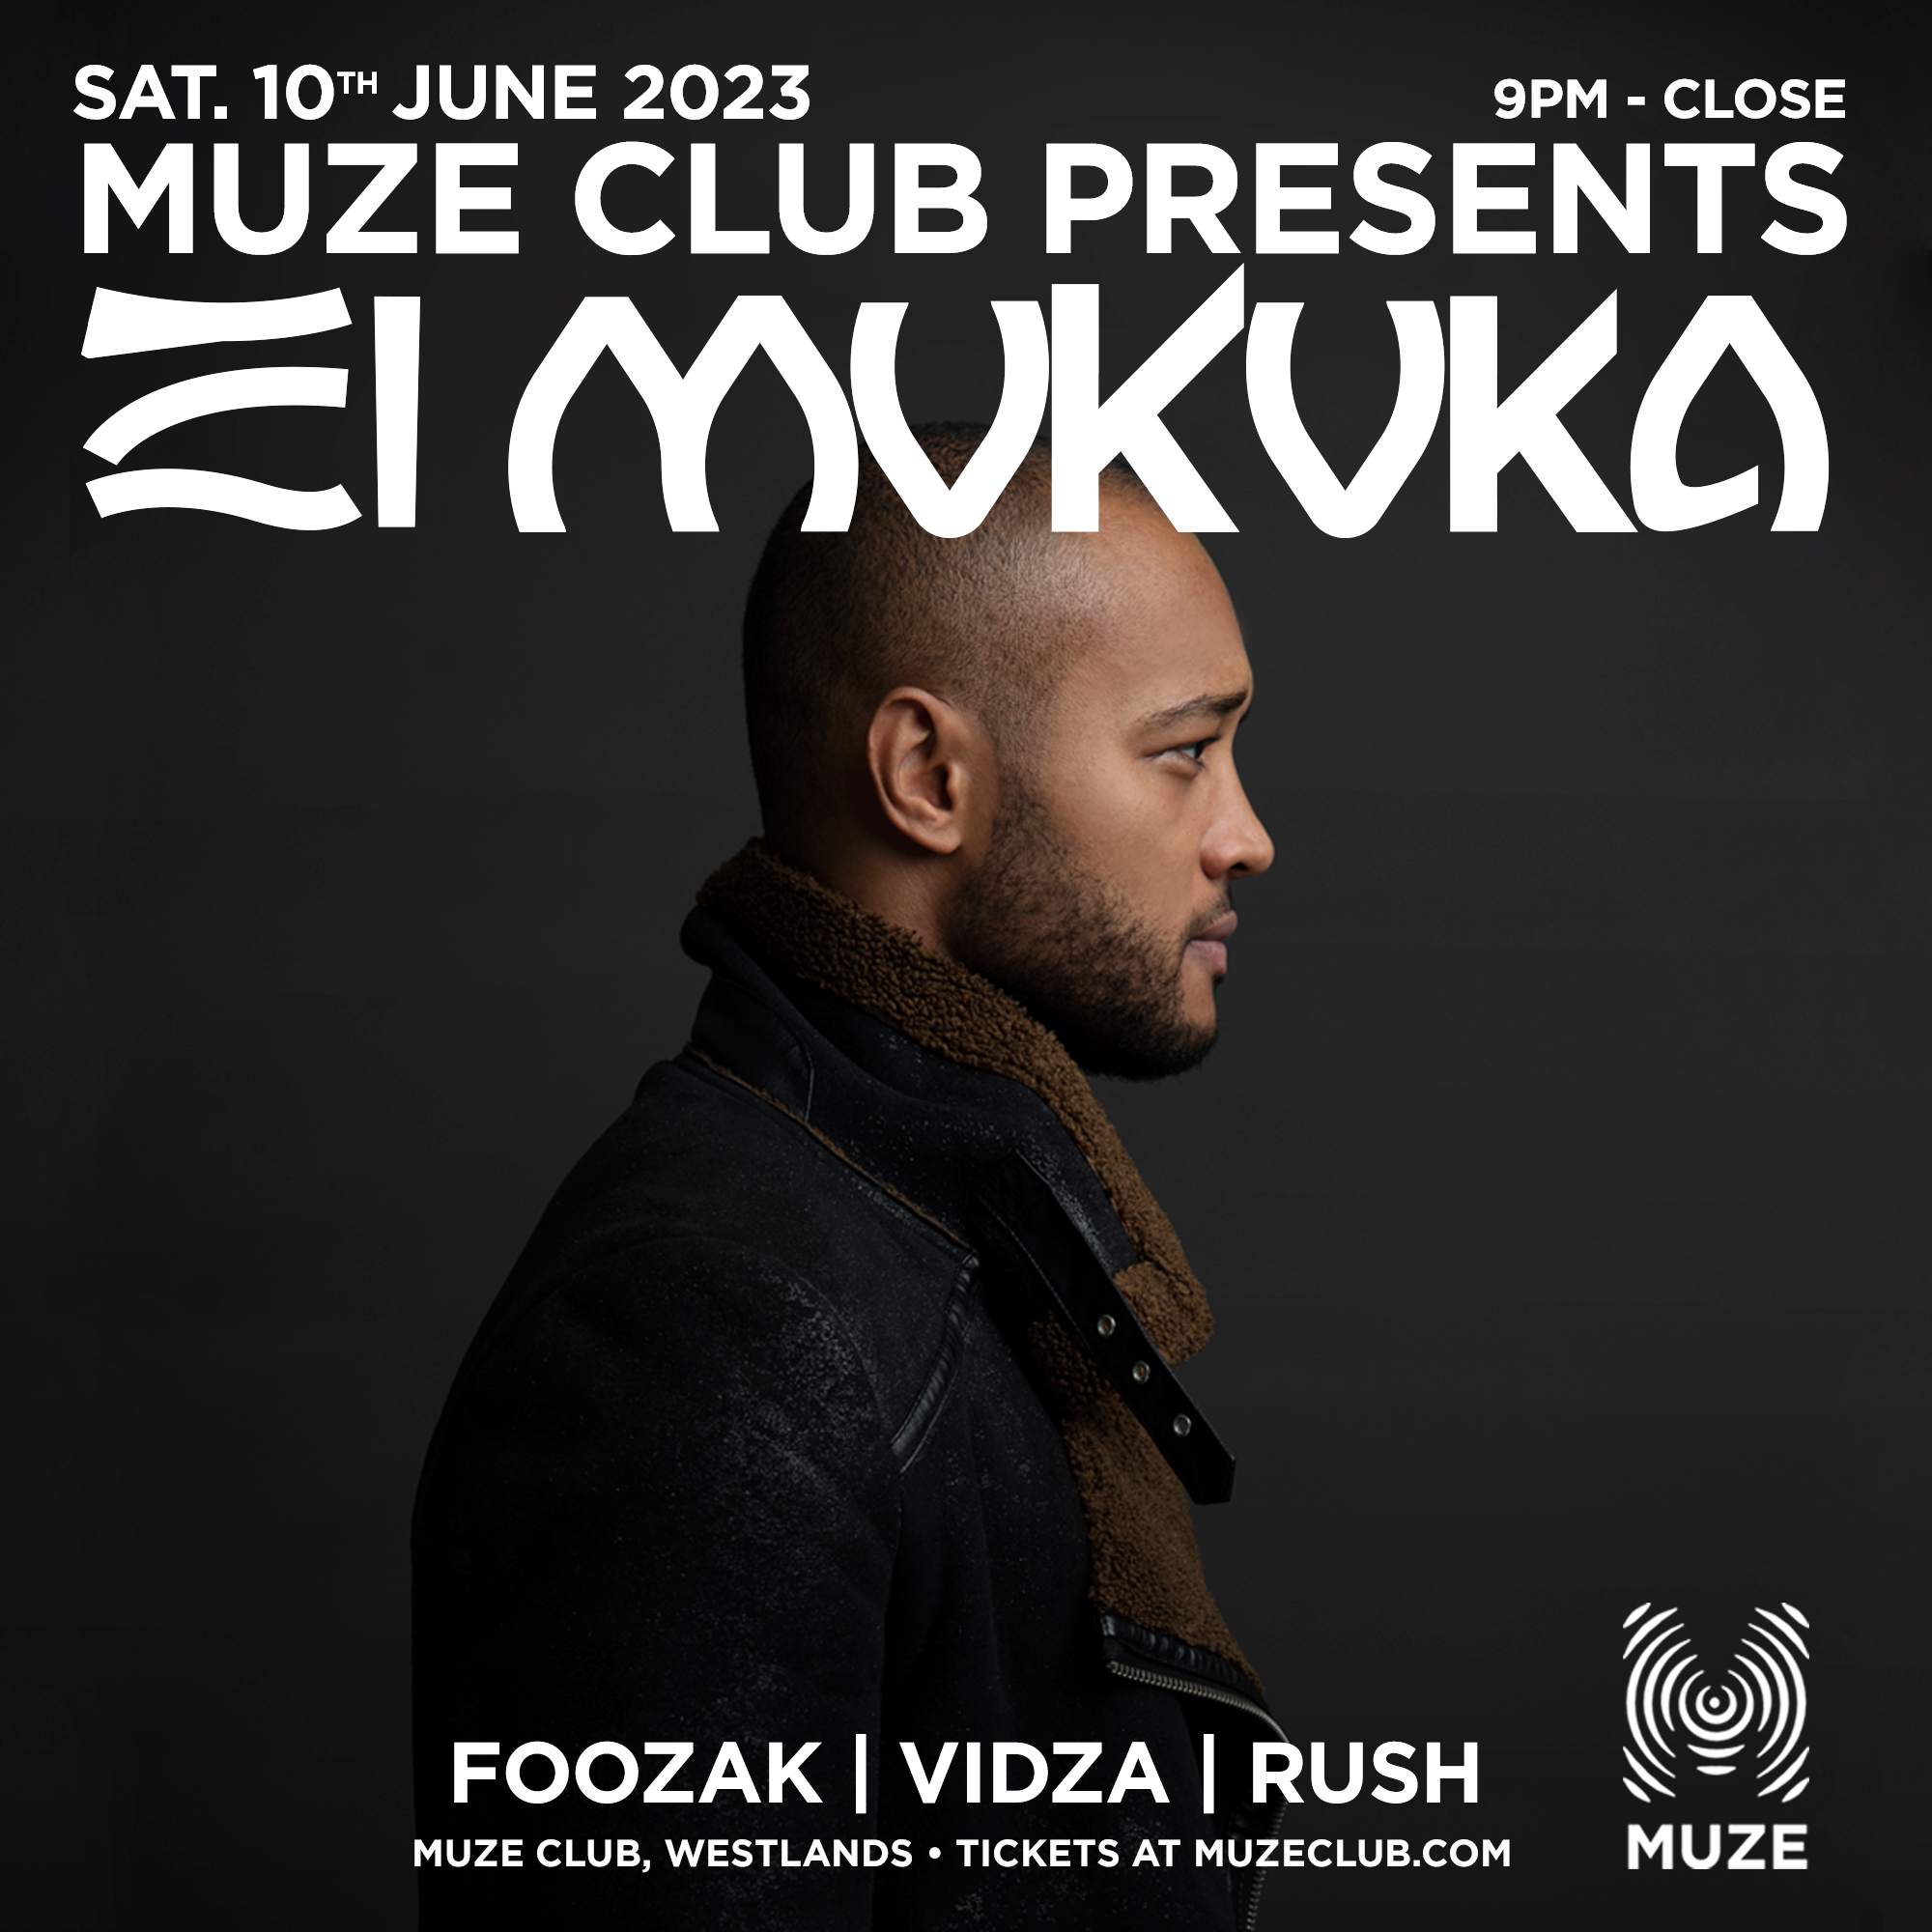 Muze Club presents El Mukuka - フライヤー表